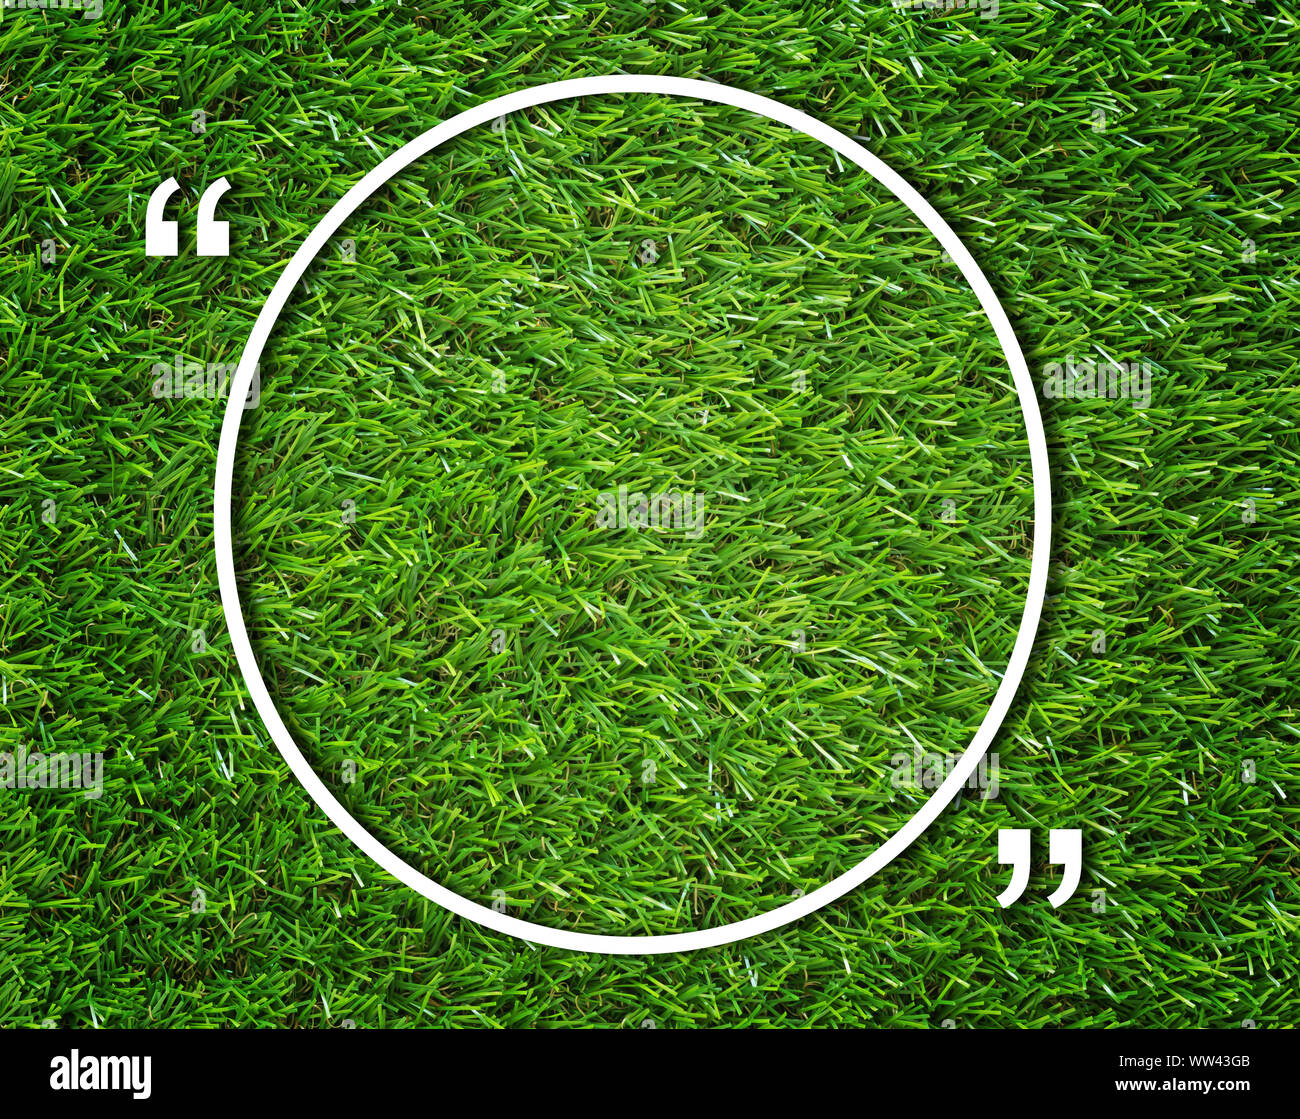 Cuadro de texto redondo y comillas en el pasto verde de fondo, el concepto de comunicación Foto de stock